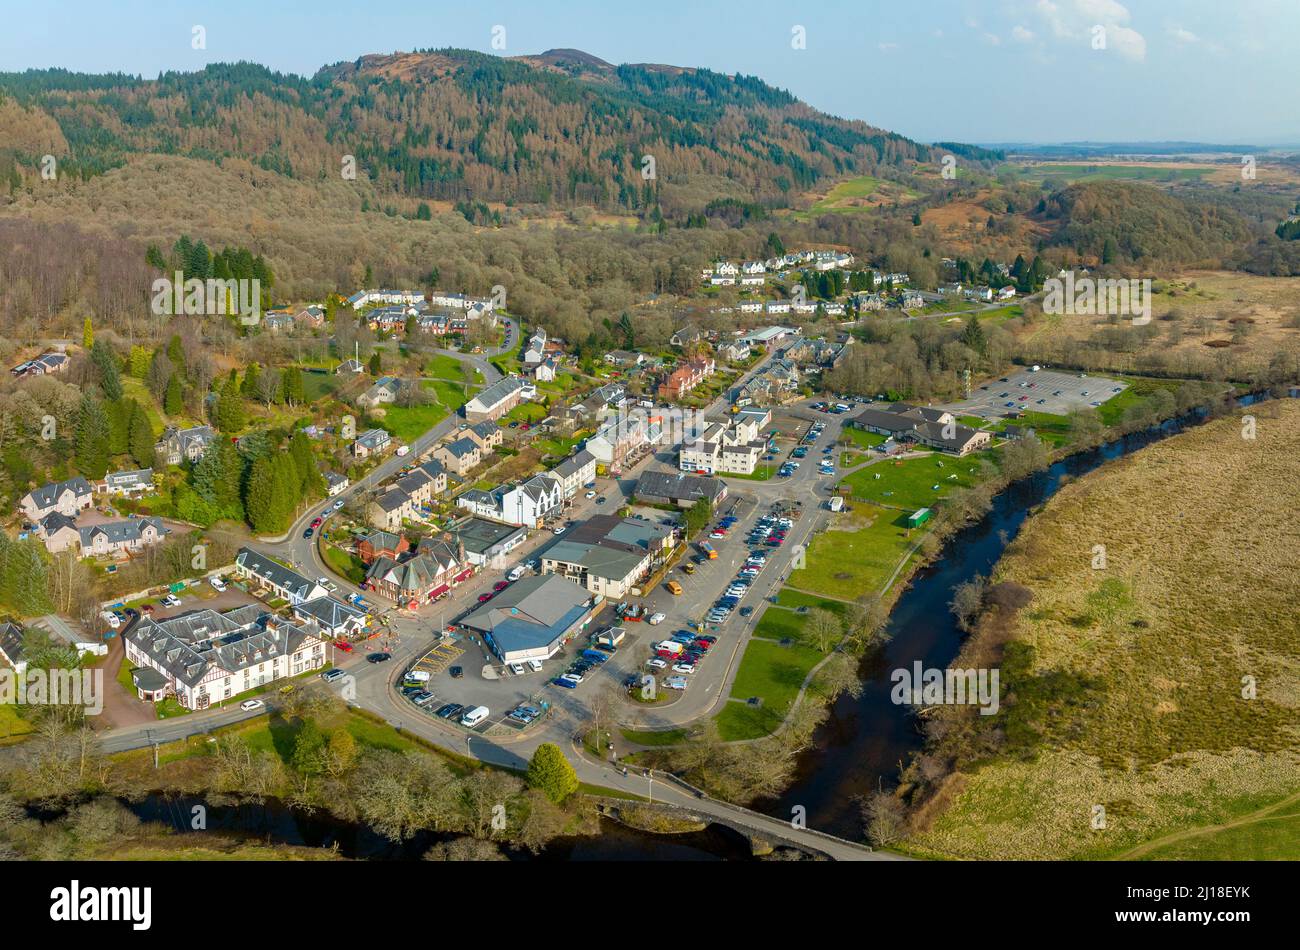 Vista aerea dal drone del villaggio di Aberfoyle e River Forth nel Loch Lomond e Trossachs National Park nel Perthshire in Scozia, Regno Unito. Foto Stock